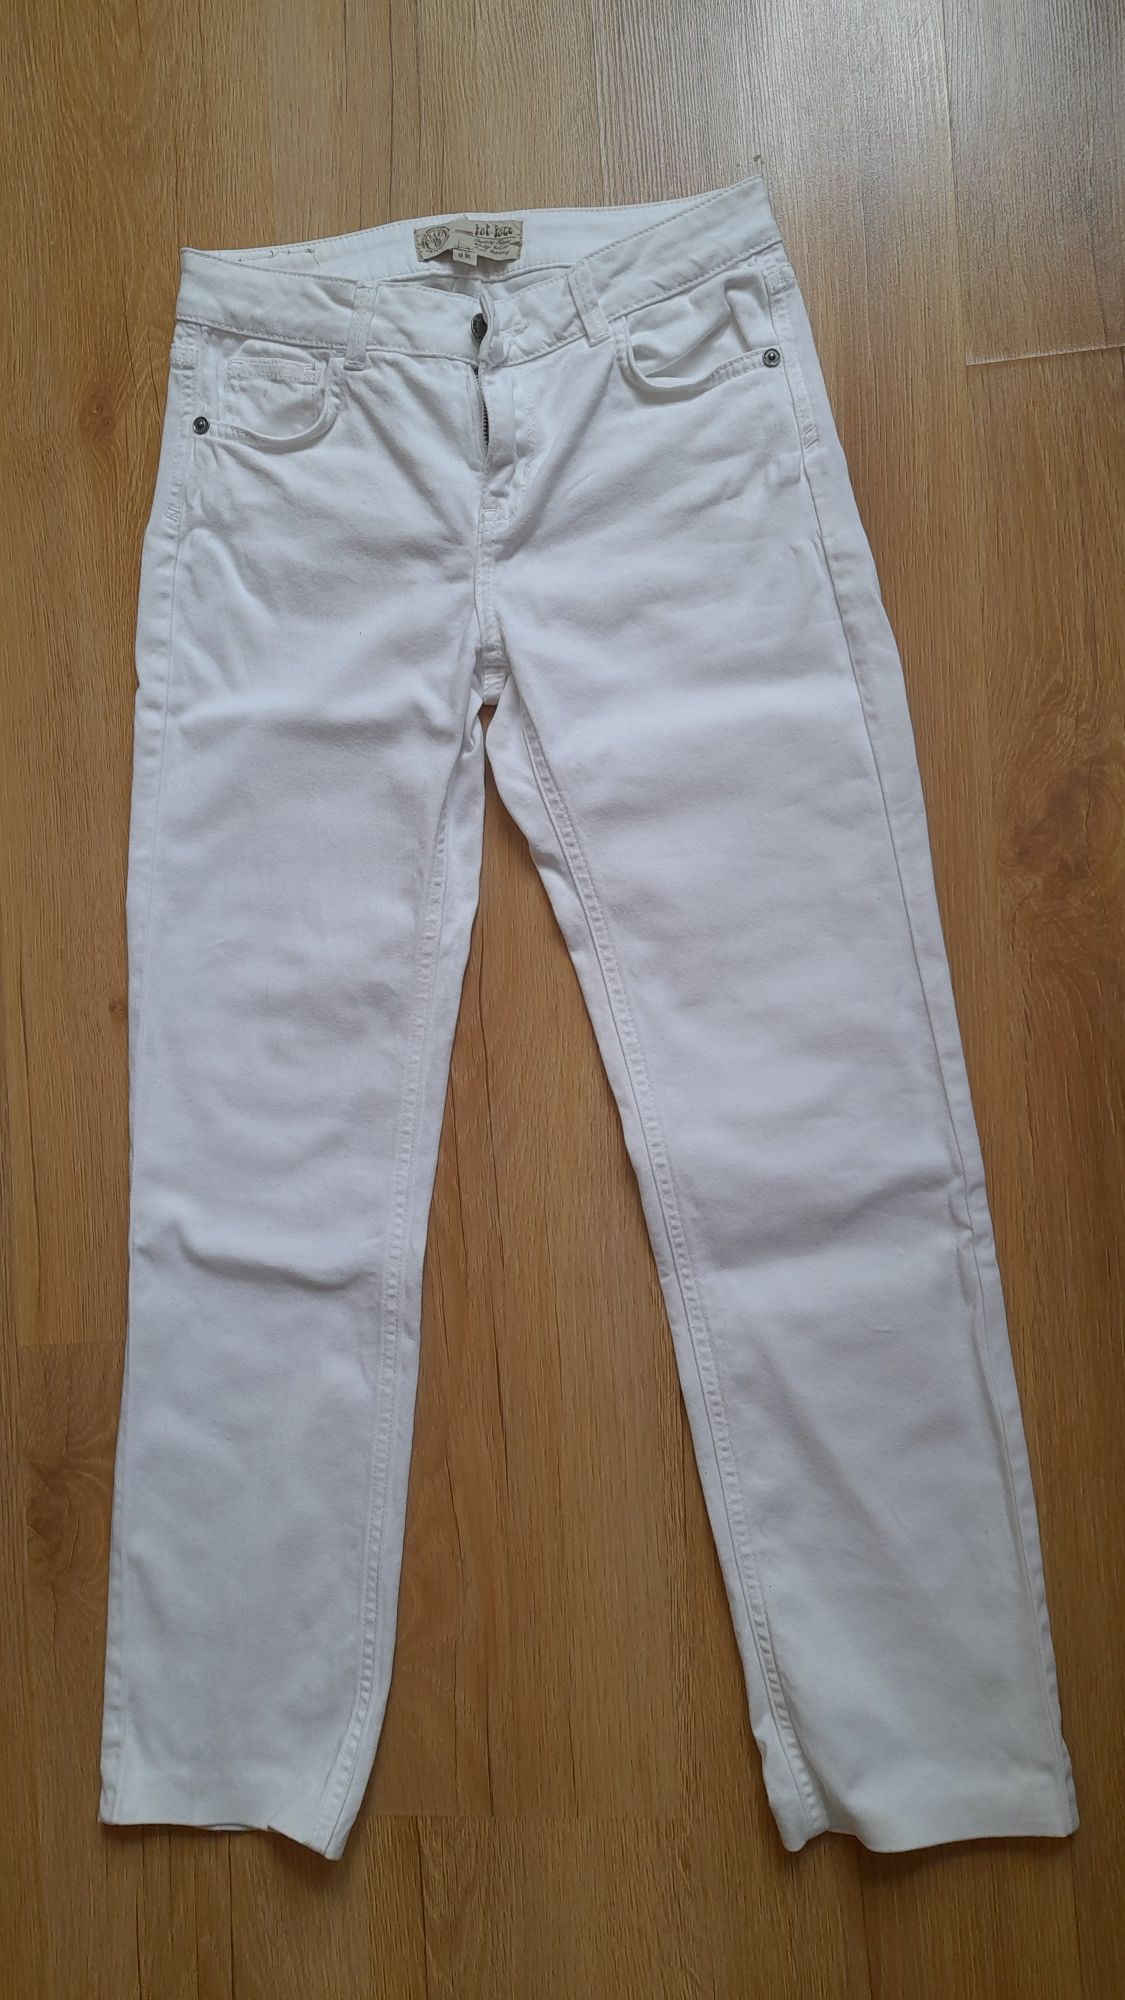 Spodnie jeansowe białe damskie rozmiar 36